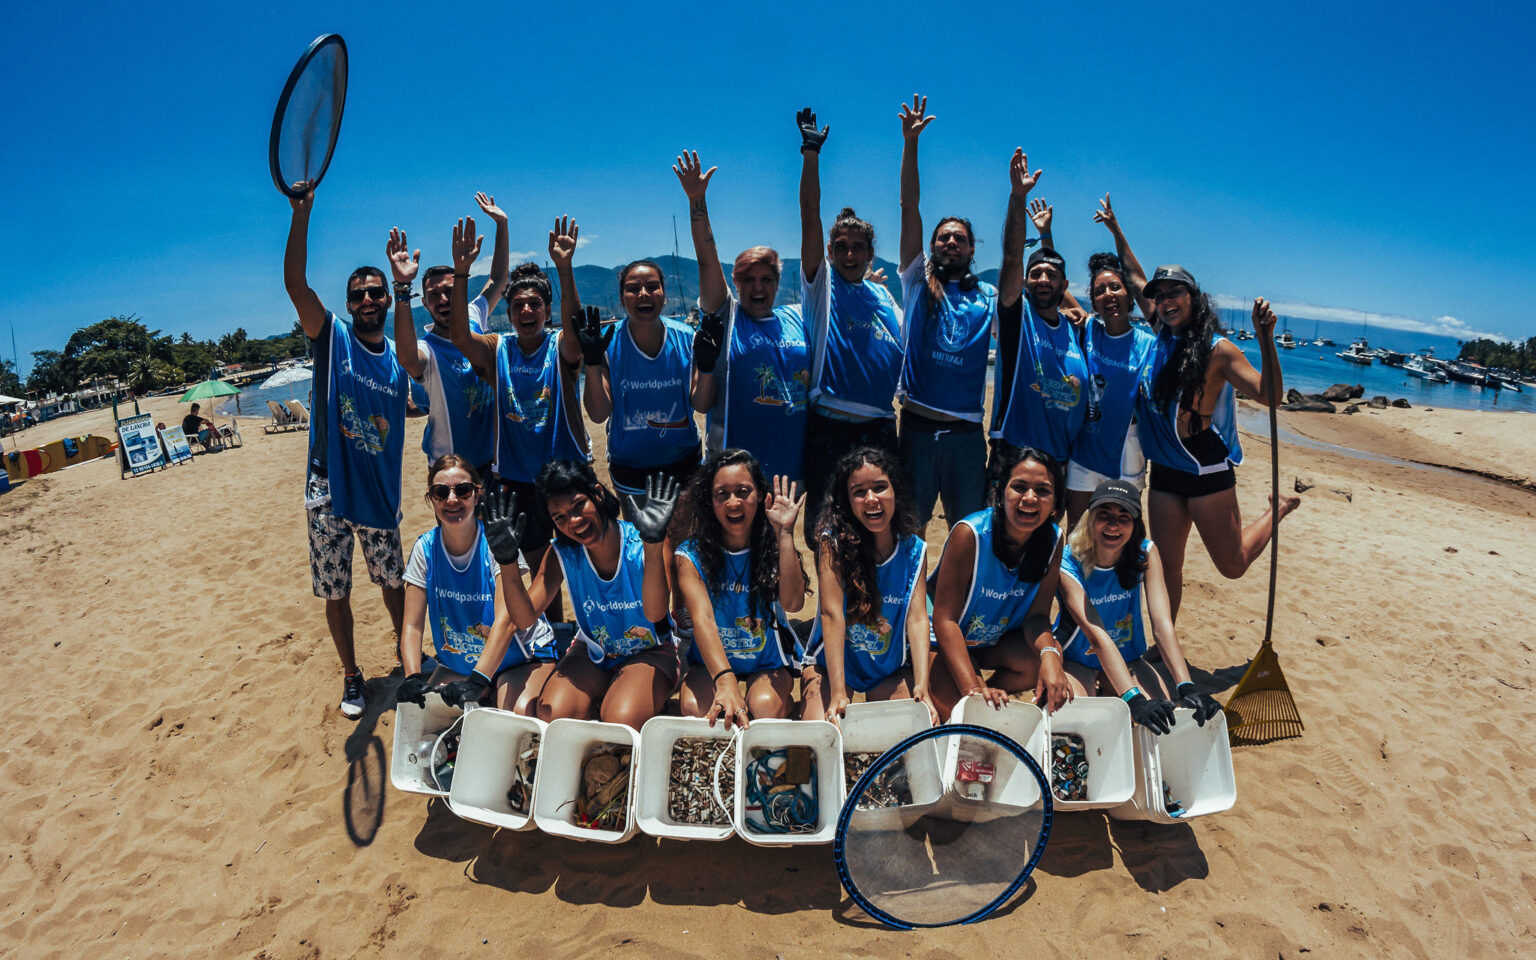 Nas ações de limpeza de praia, promovidas pela Worldpackers Brasil, voluntários se reúnem para viver uma experiência de impacto local